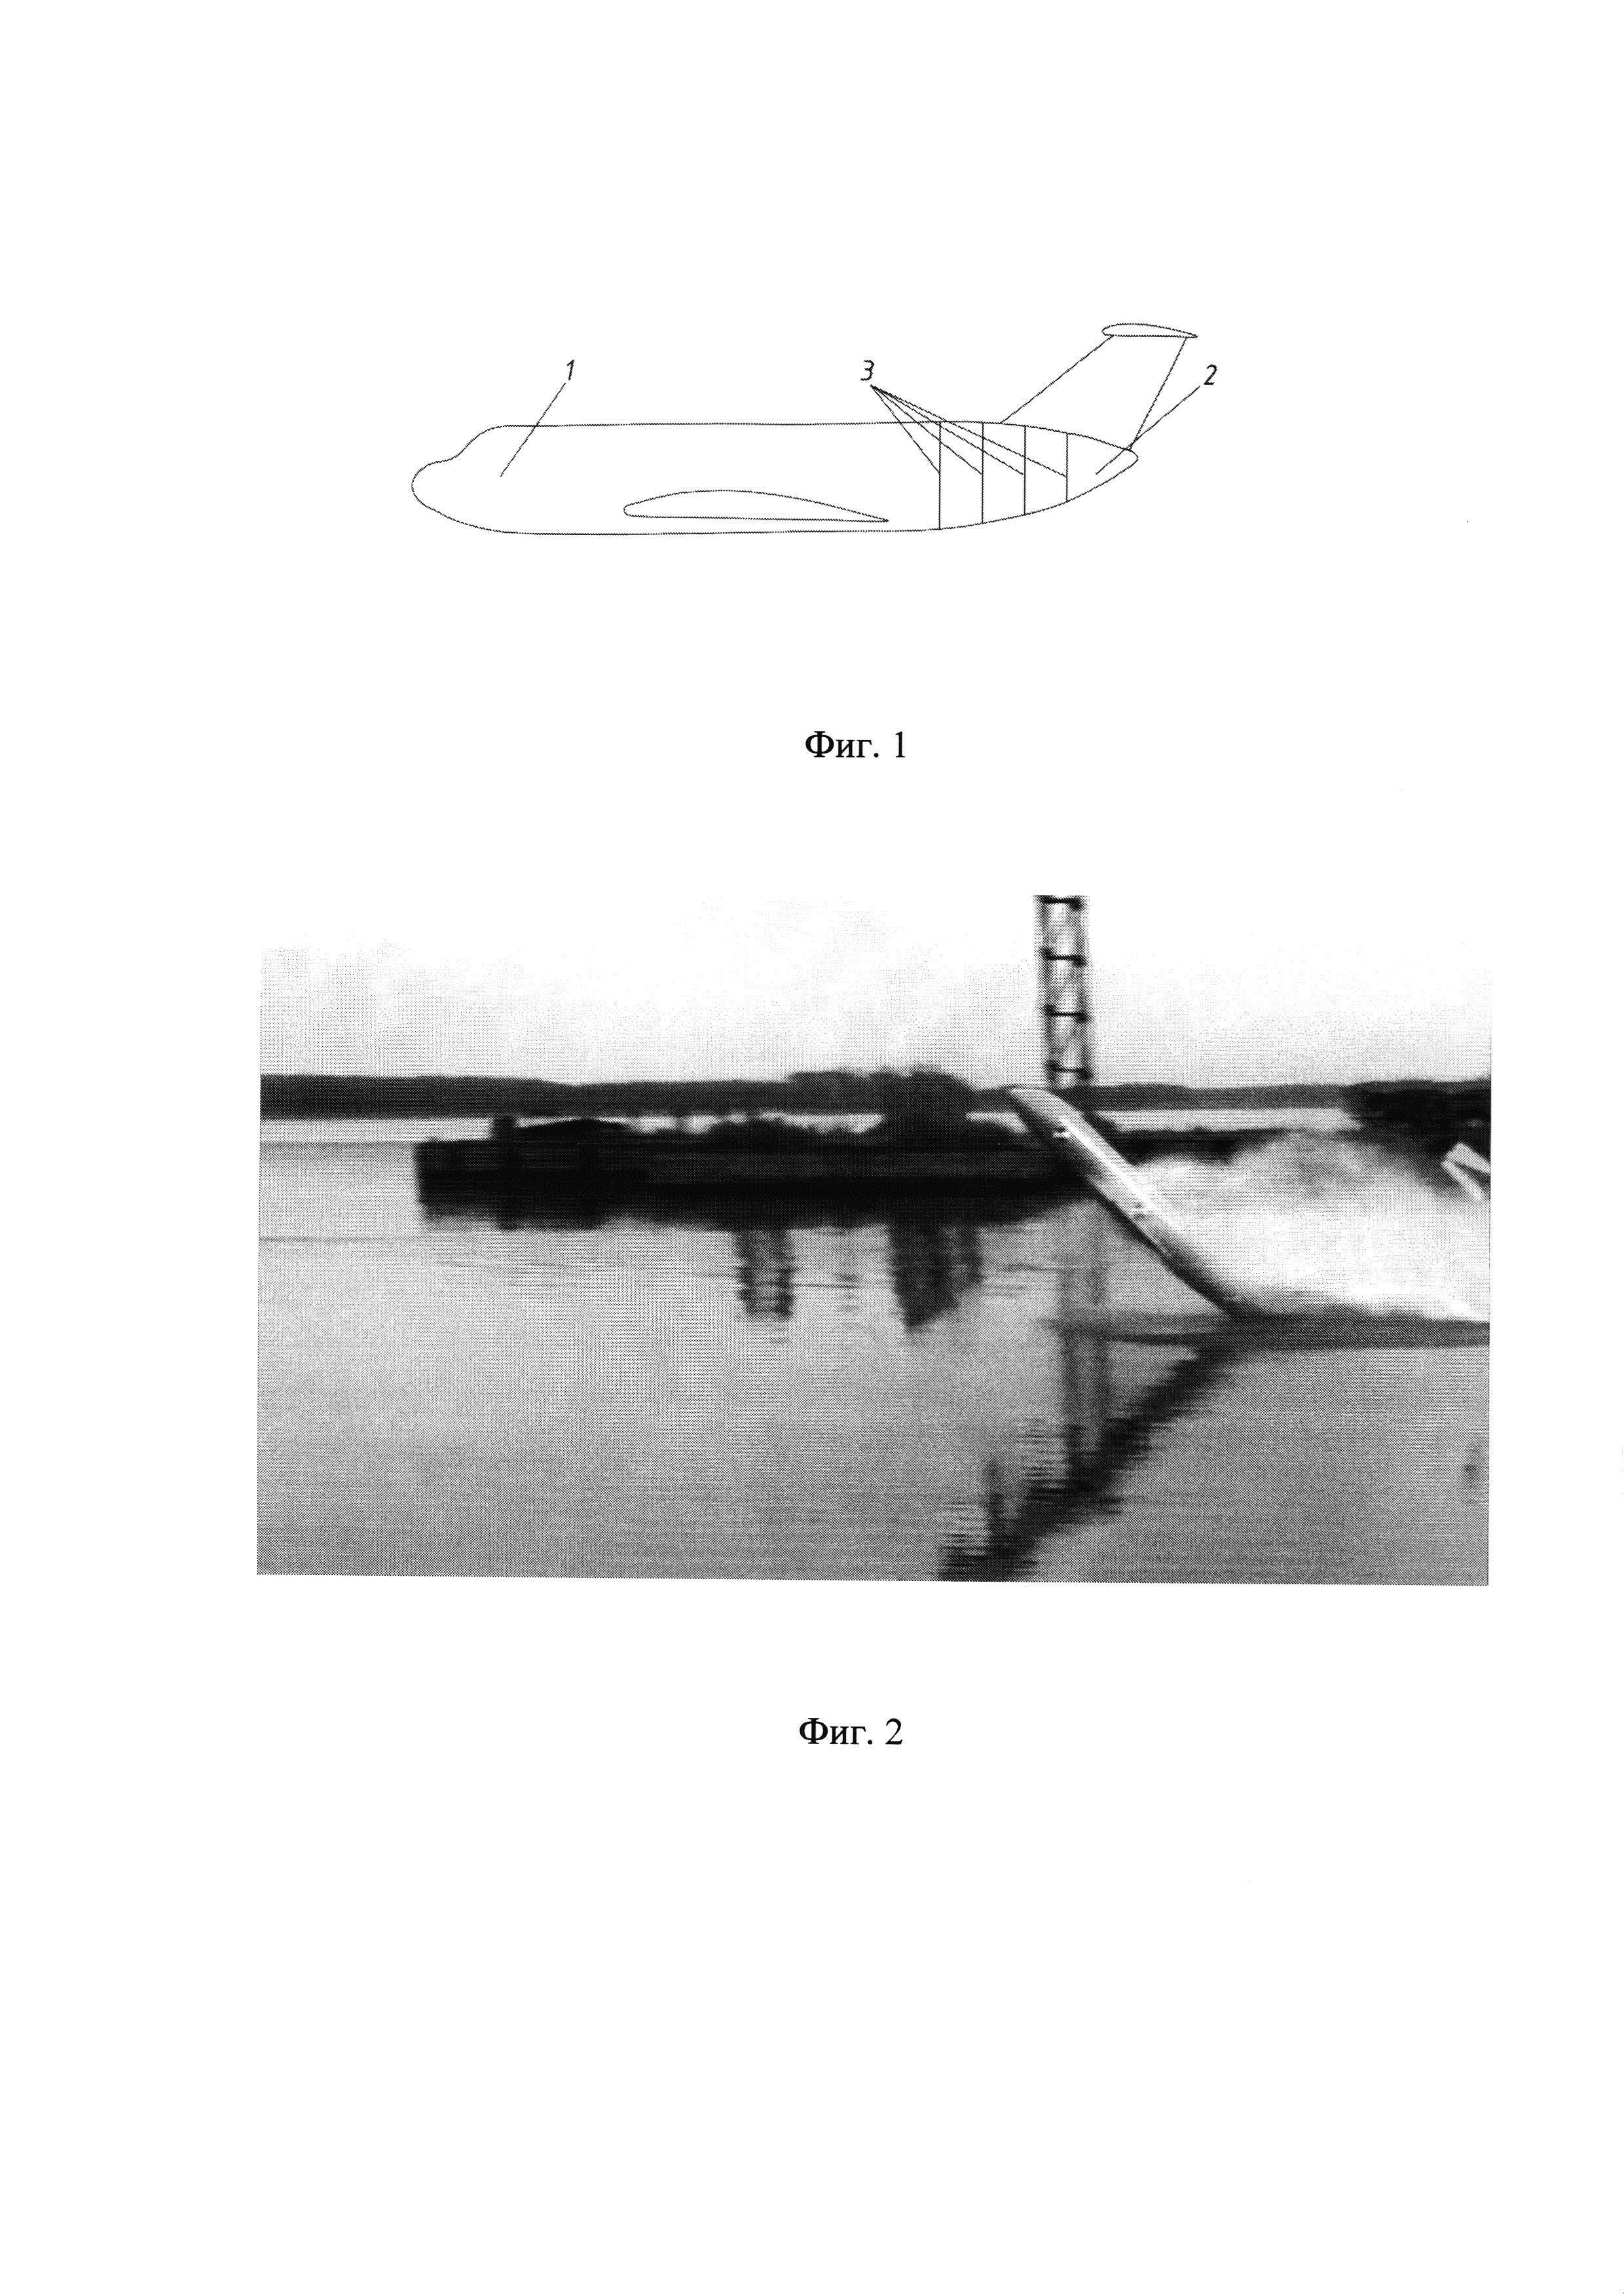 Модель для исследования посадки самолёта на воду